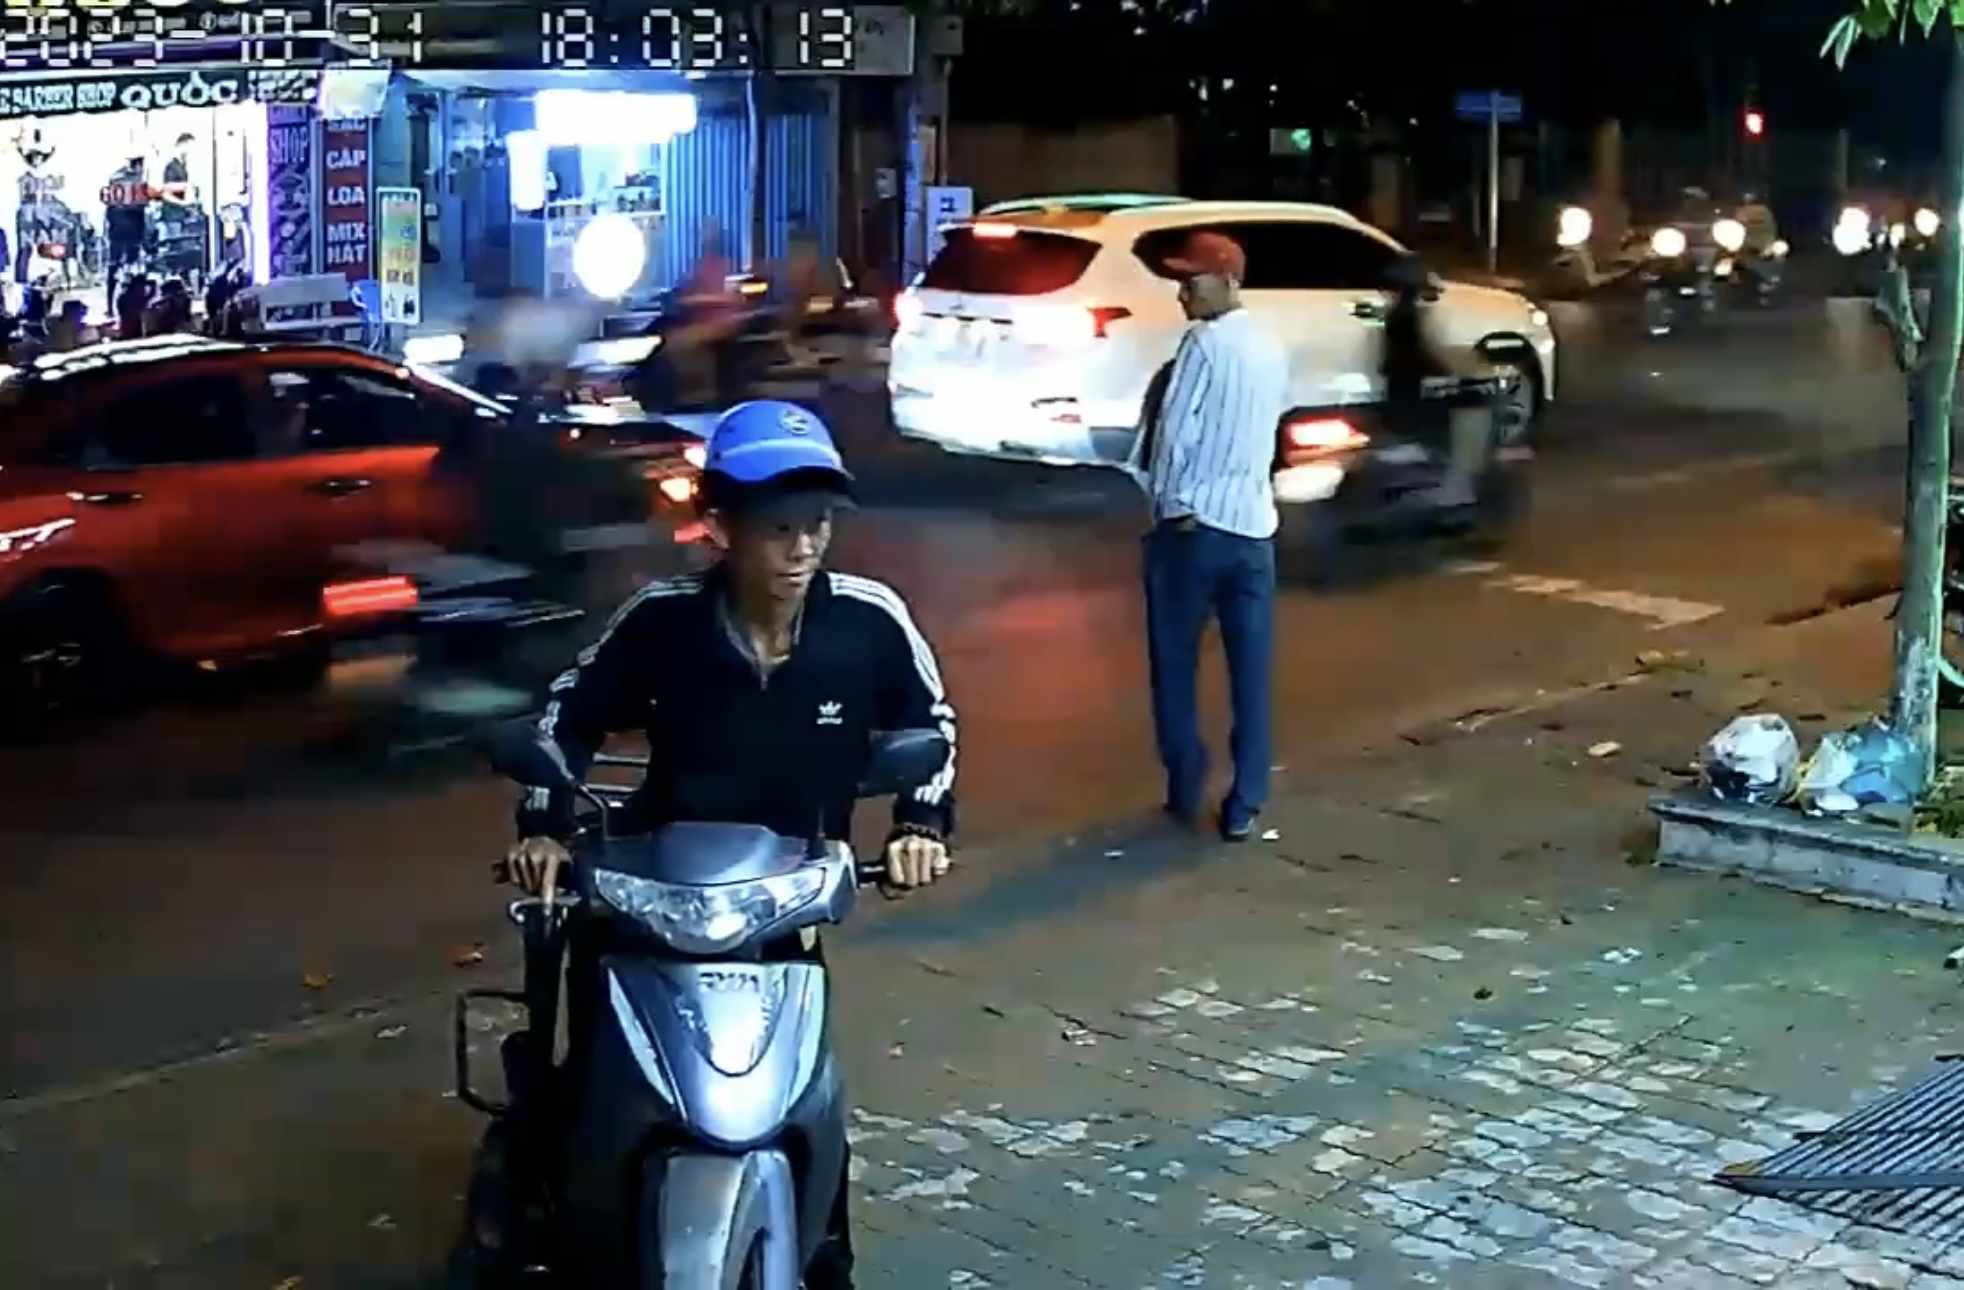 Camera ghi lại hình ảnh tên trộm lấy xe máy. Ảnh cắt từ camera